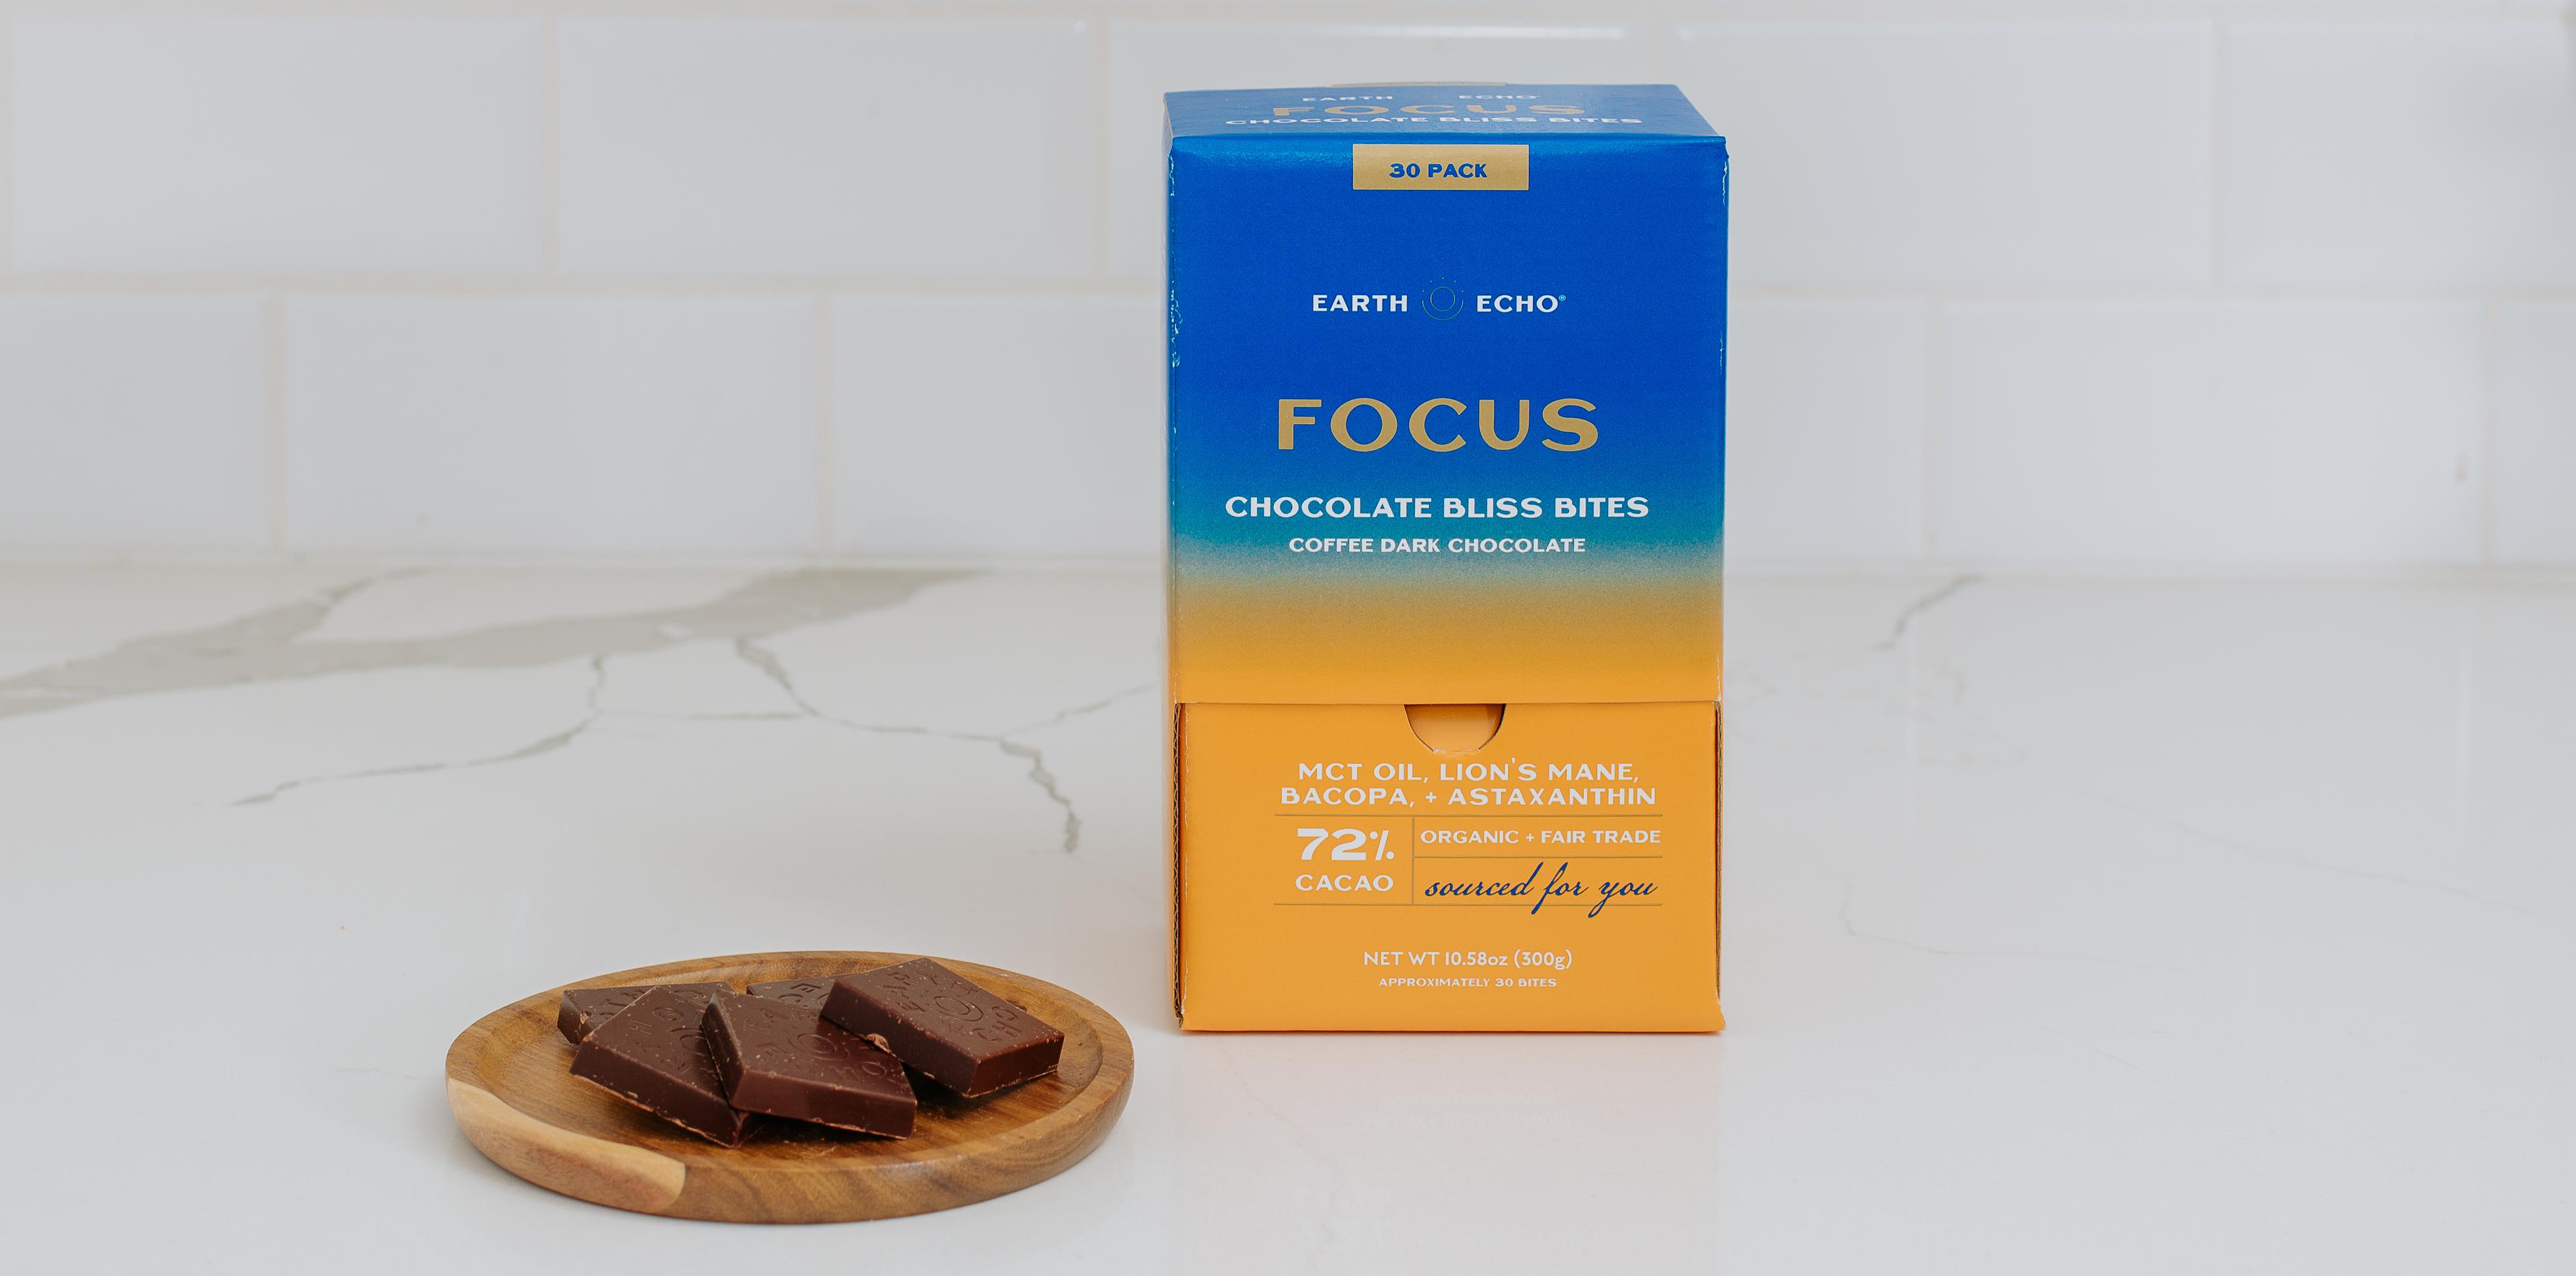 Focus Chocolate Bliss Bites